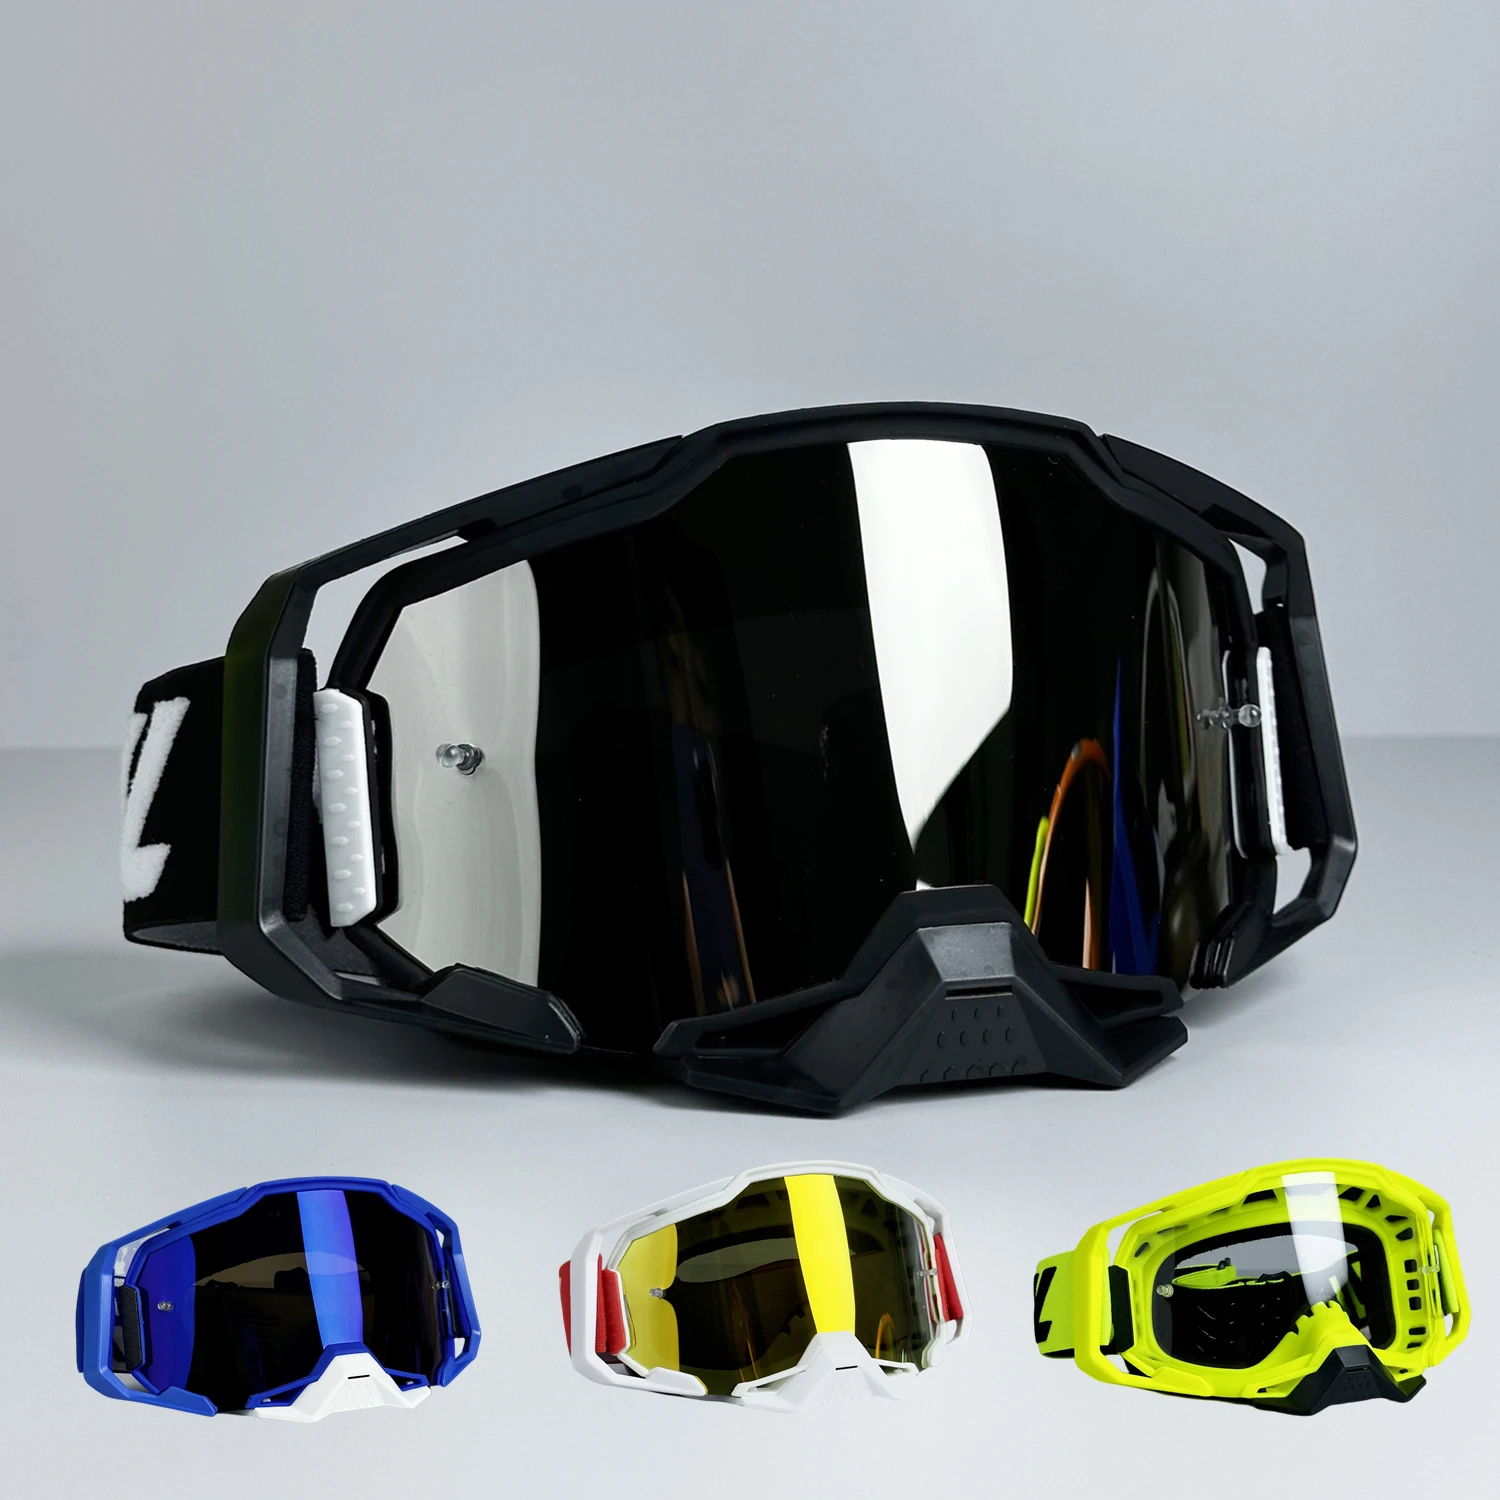 

Очки для мотокросса, мотоциклетные велосипедные ветрозащитные мужские очки для горного велосипеда, для пересеченной местности, широкоугольные лыжные очки WJL2.0